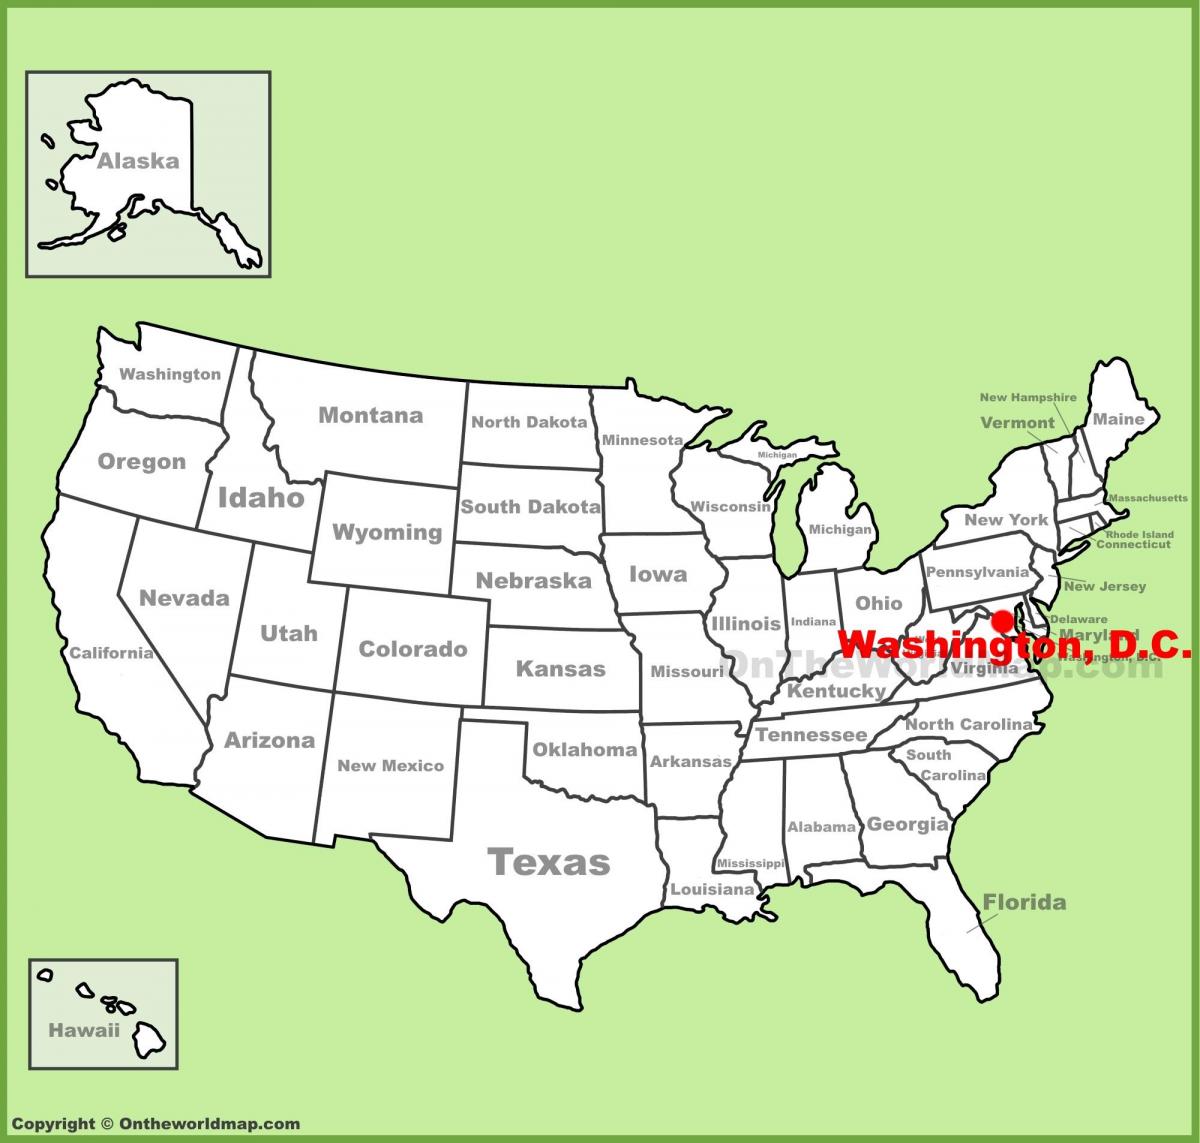 washington dc sa mapa ng amerika